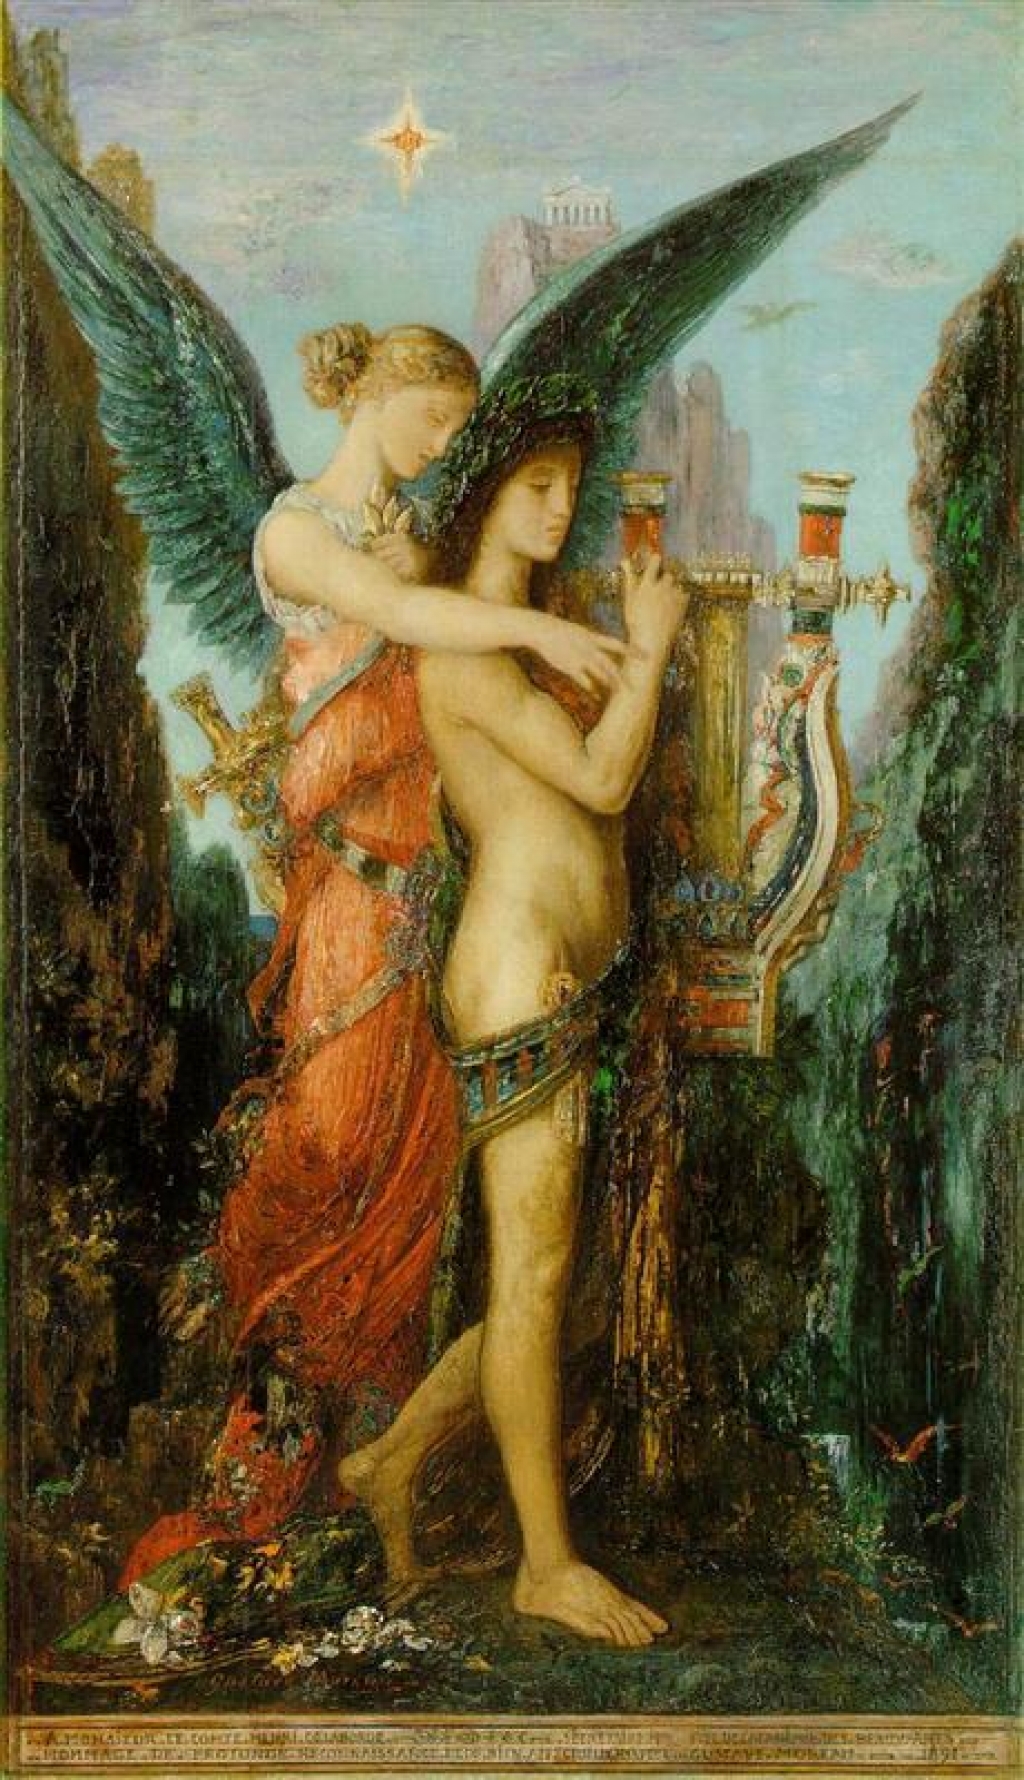 La foto muestra el cuadro "Hesíodo y la Musa", del pintor francés Gustave Moreau.